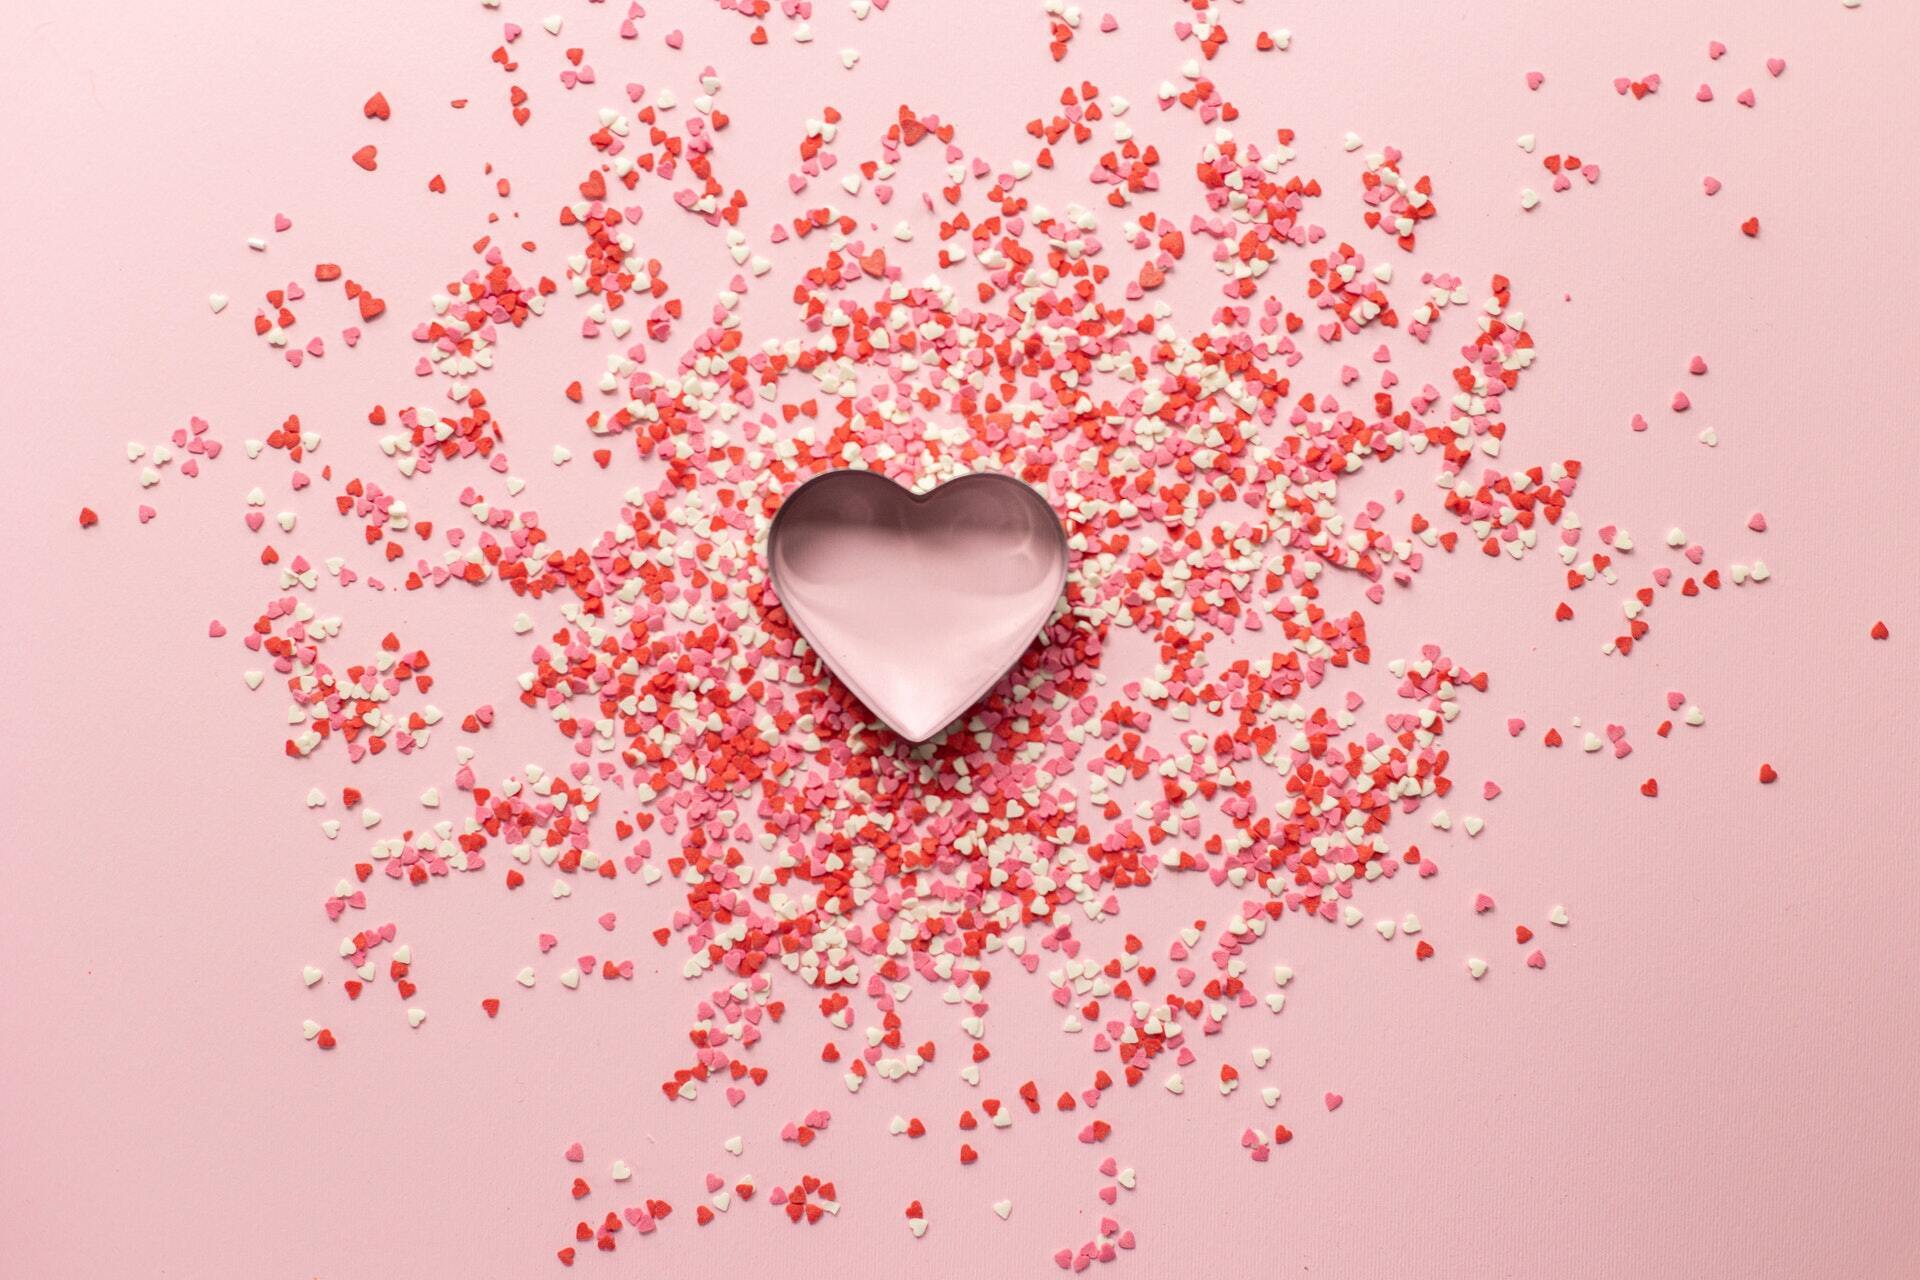 У День закоханих заведено дарувати коханим валентинки та інші приємні сюрпризи